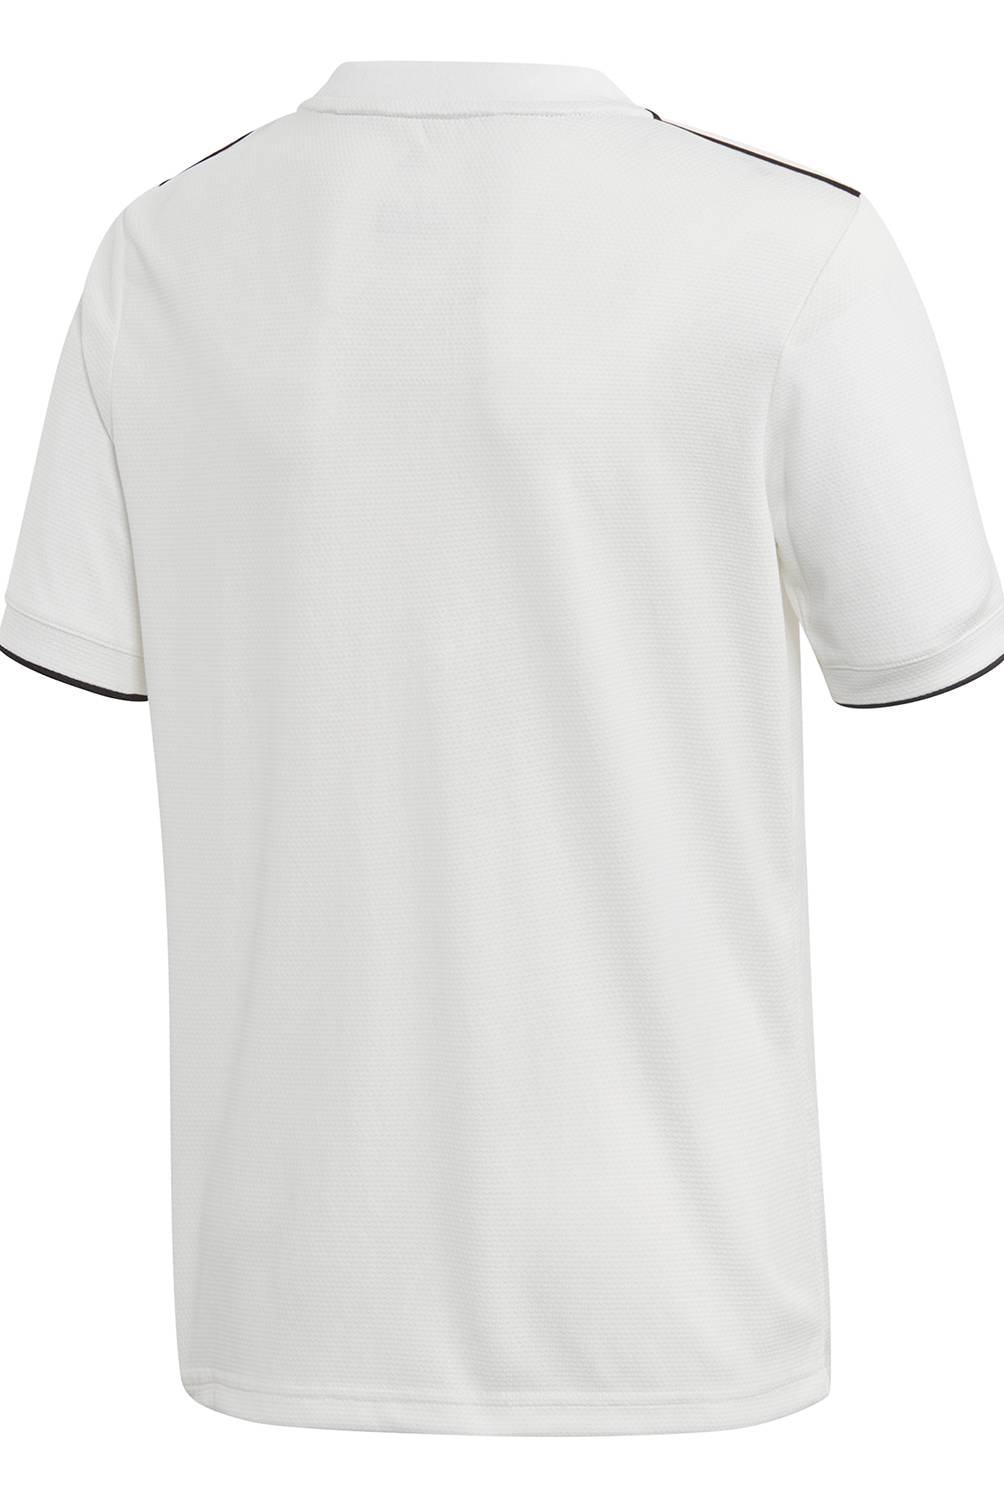 Adidas - Camiseta Real Madrid Niño